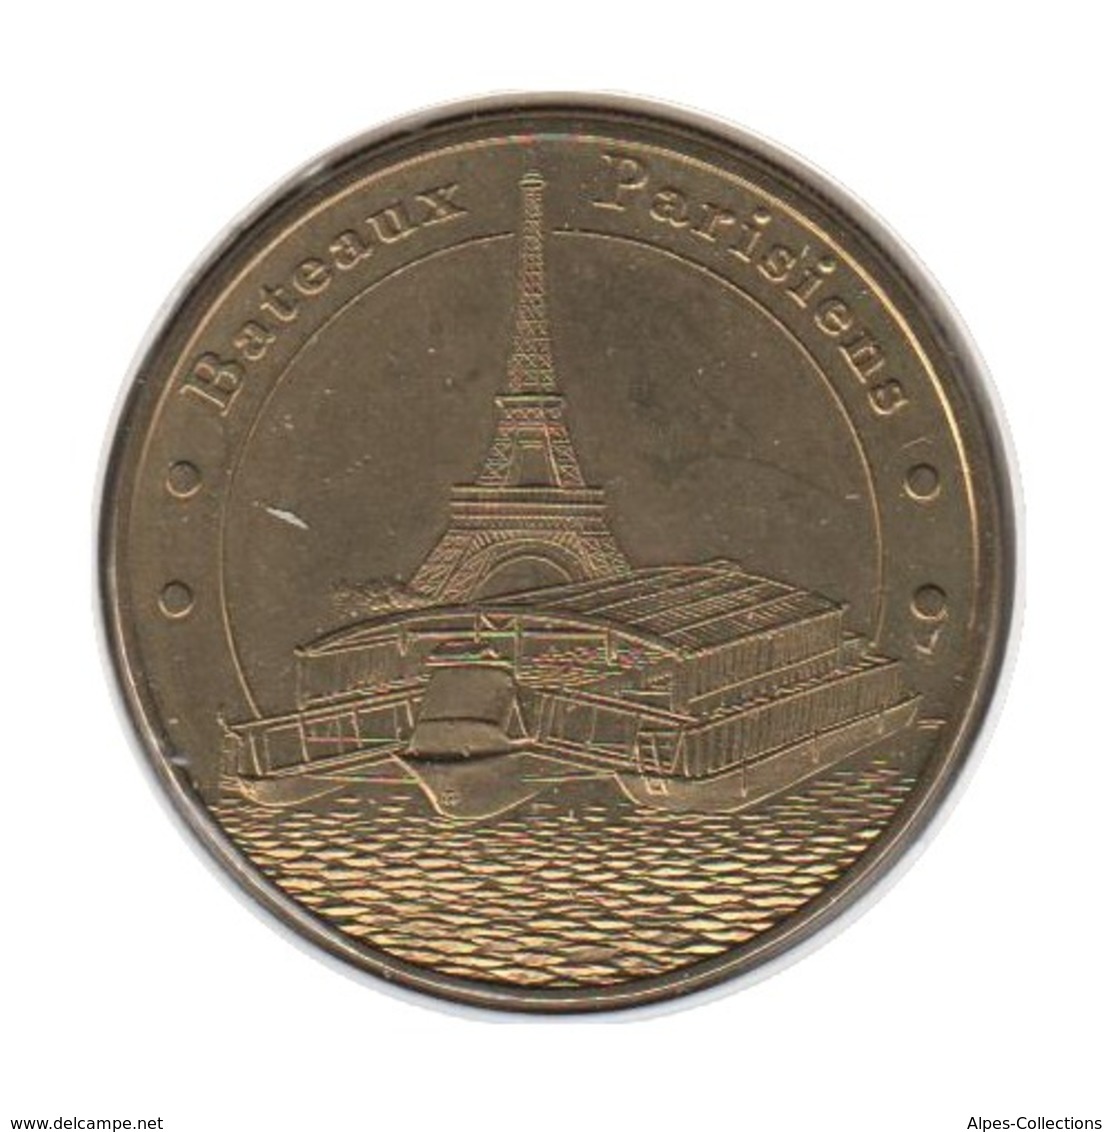 75051 - MEDAILLE TOURISTIQUE MONNAIE DE PARIS 75007 - Bateaux Parisiens - 2013 - 2013